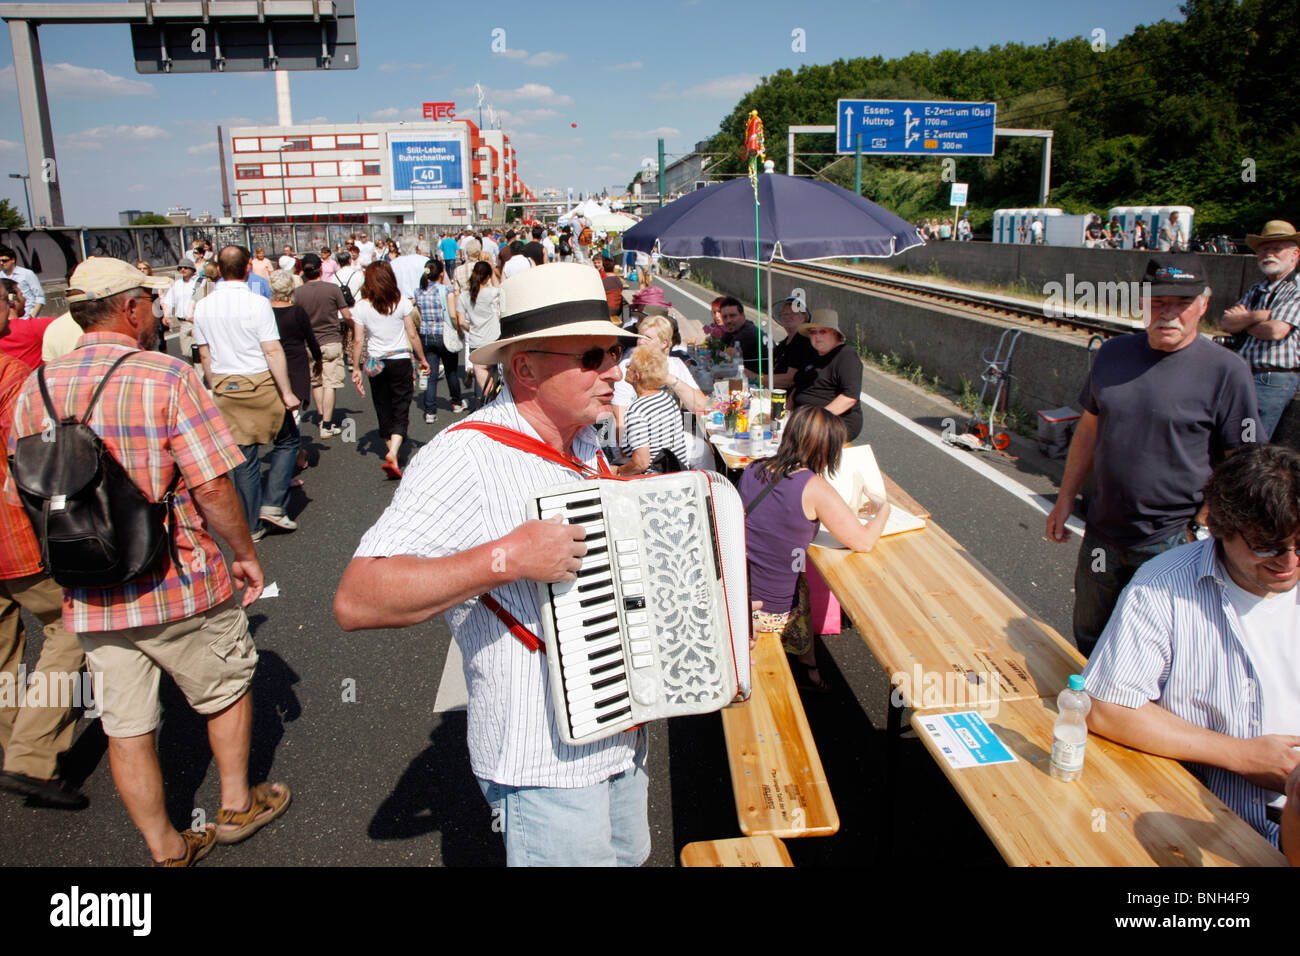 Still-Leben, fermeture de l'autoroute A40, 60 km de long pour un festival culturel, avec plus de 3 millions de spectateurs. Ruhr, Allemagne Banque D'Images